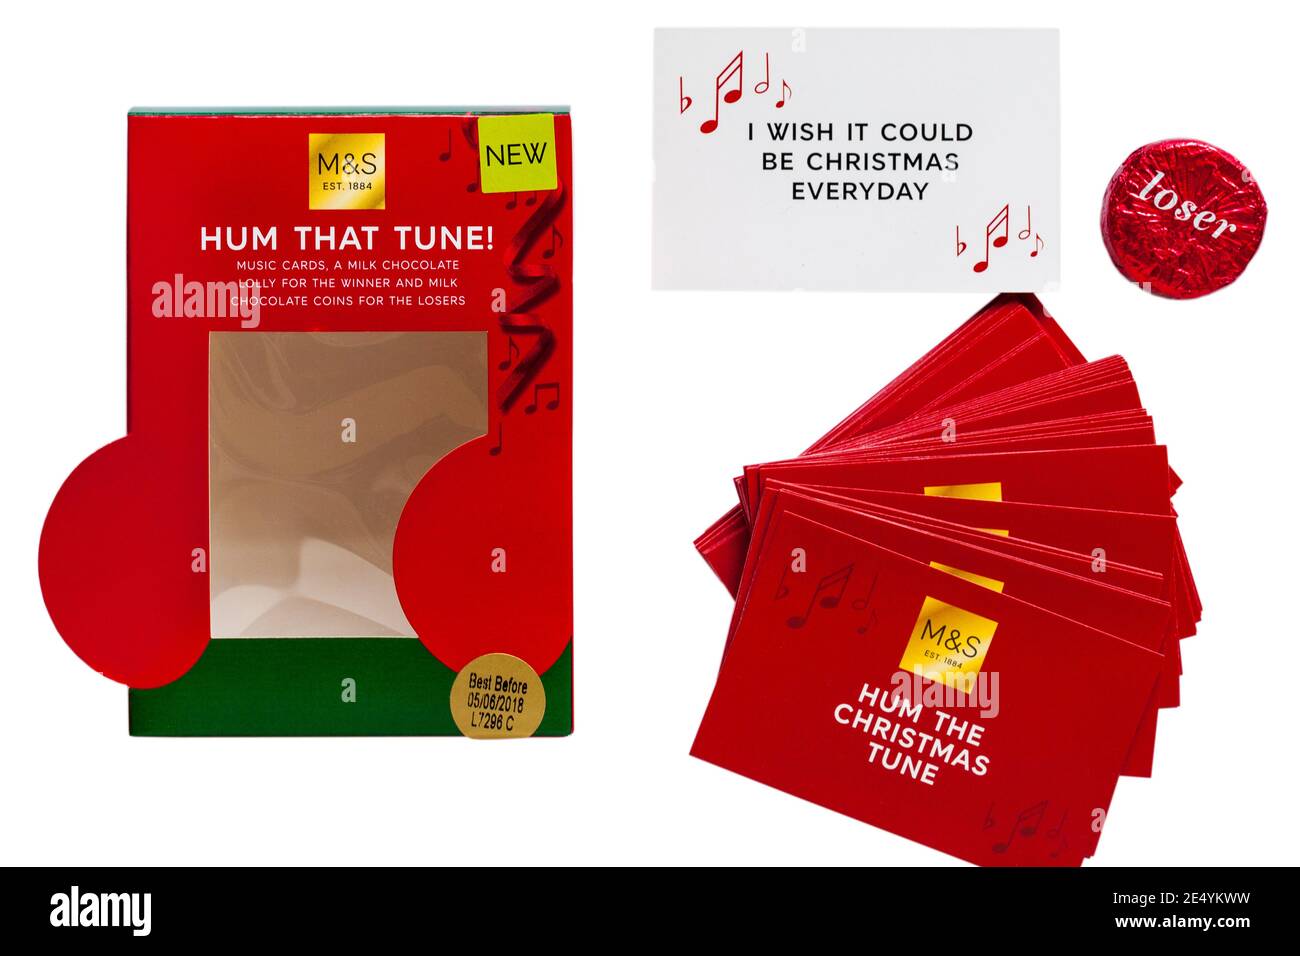 M&S Hum Tune Game avec Hum The Christmas Tune Cartes retirées de la boîte sur fond blanc - I Nous aurions bien aimé Noël tous les jours Banque D'Images